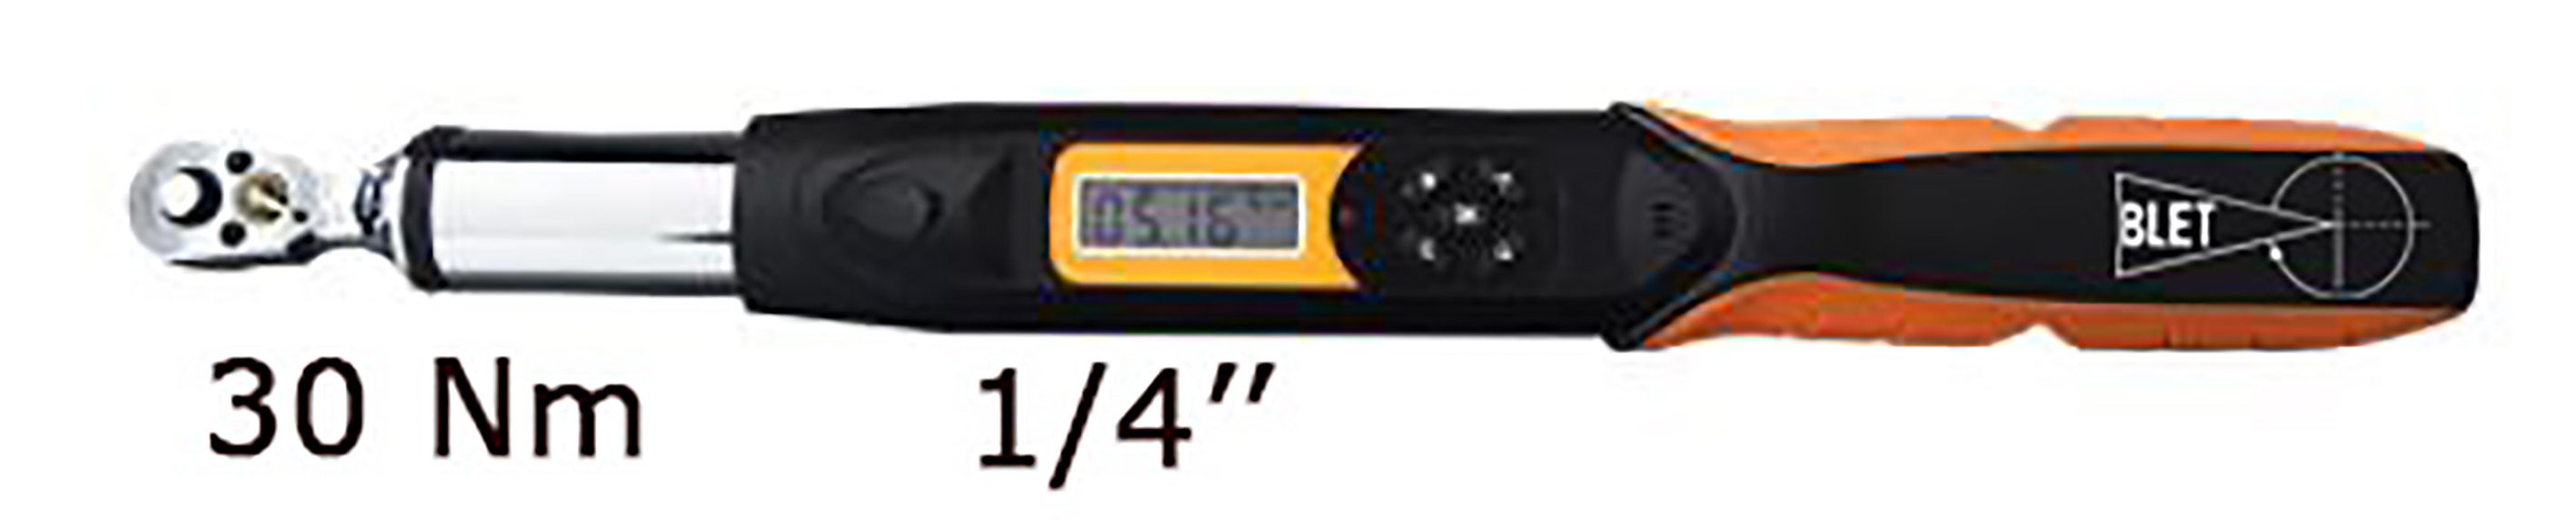 CLE DYNAMOMETRIQUE ELECTRONIQUE AVEC COMMUNICATION 30 Nm LECTURE 0,01 Nm TAILLE 1/4" BLET<br>Ref : CLET5-CDP03014